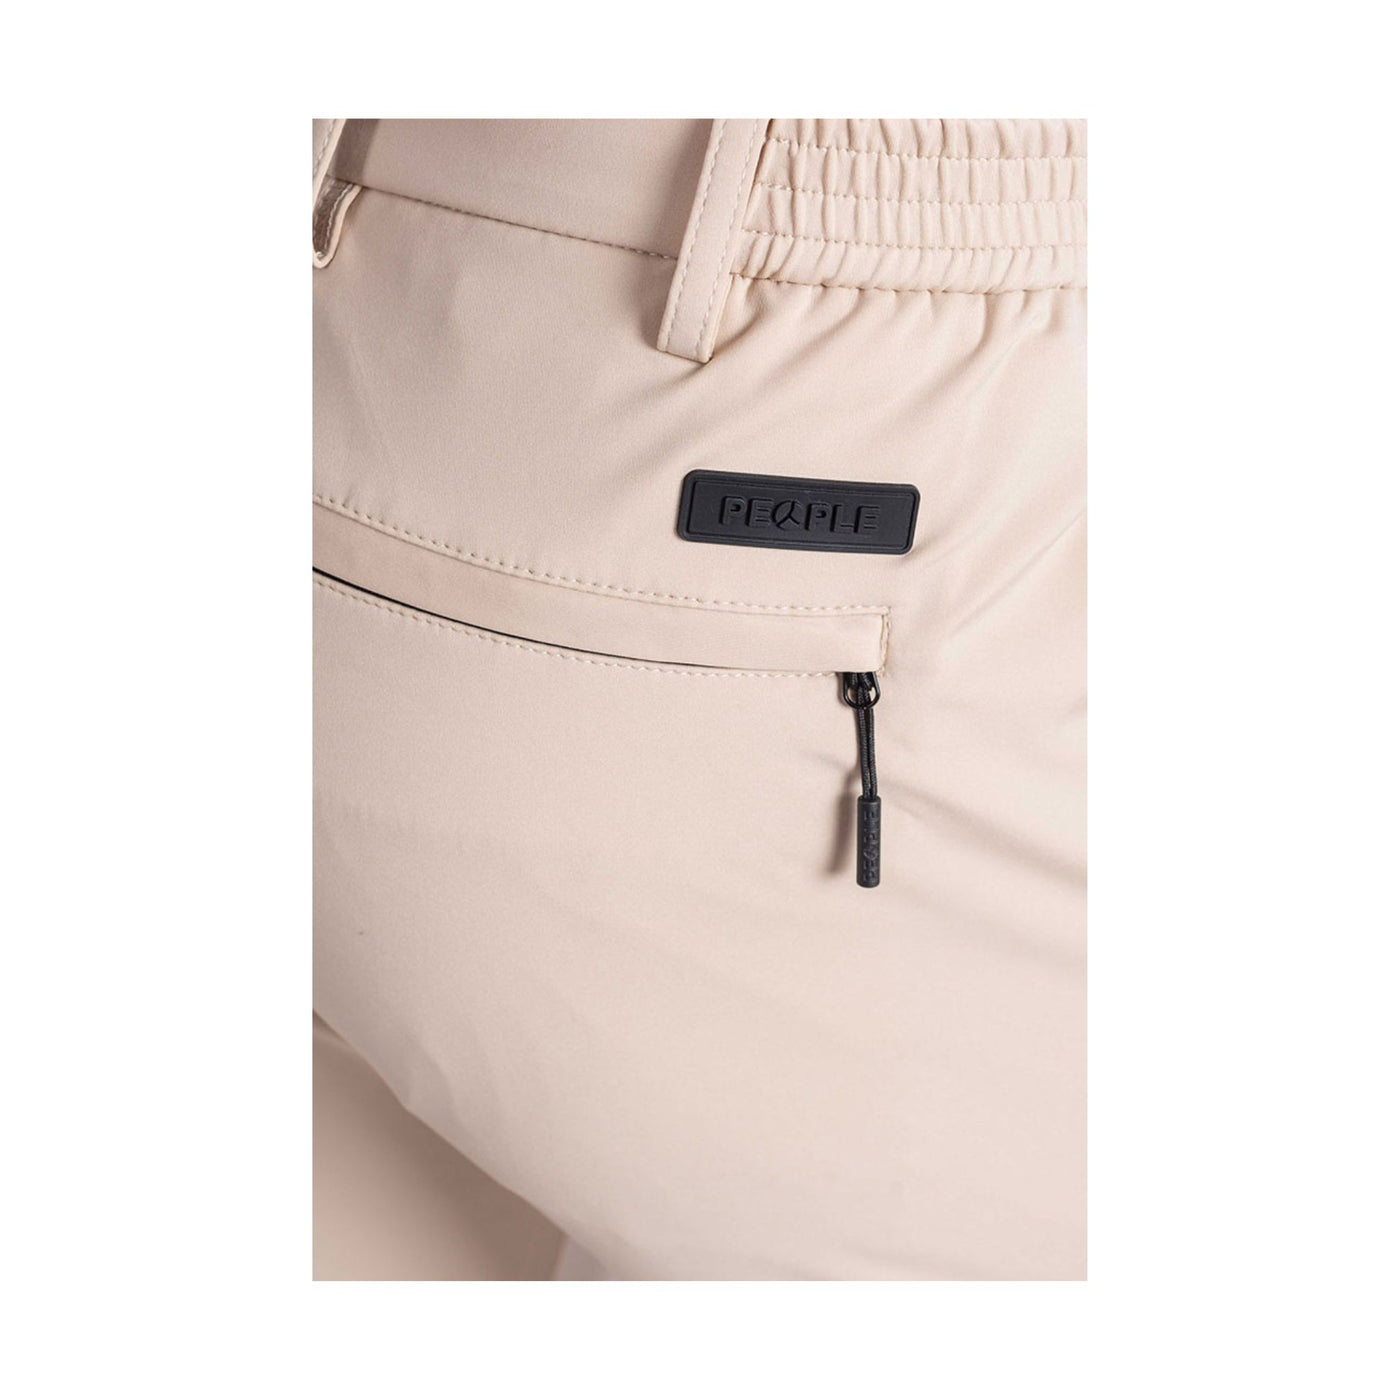 Dettaglio ravvicinato tasca con zip sul retro